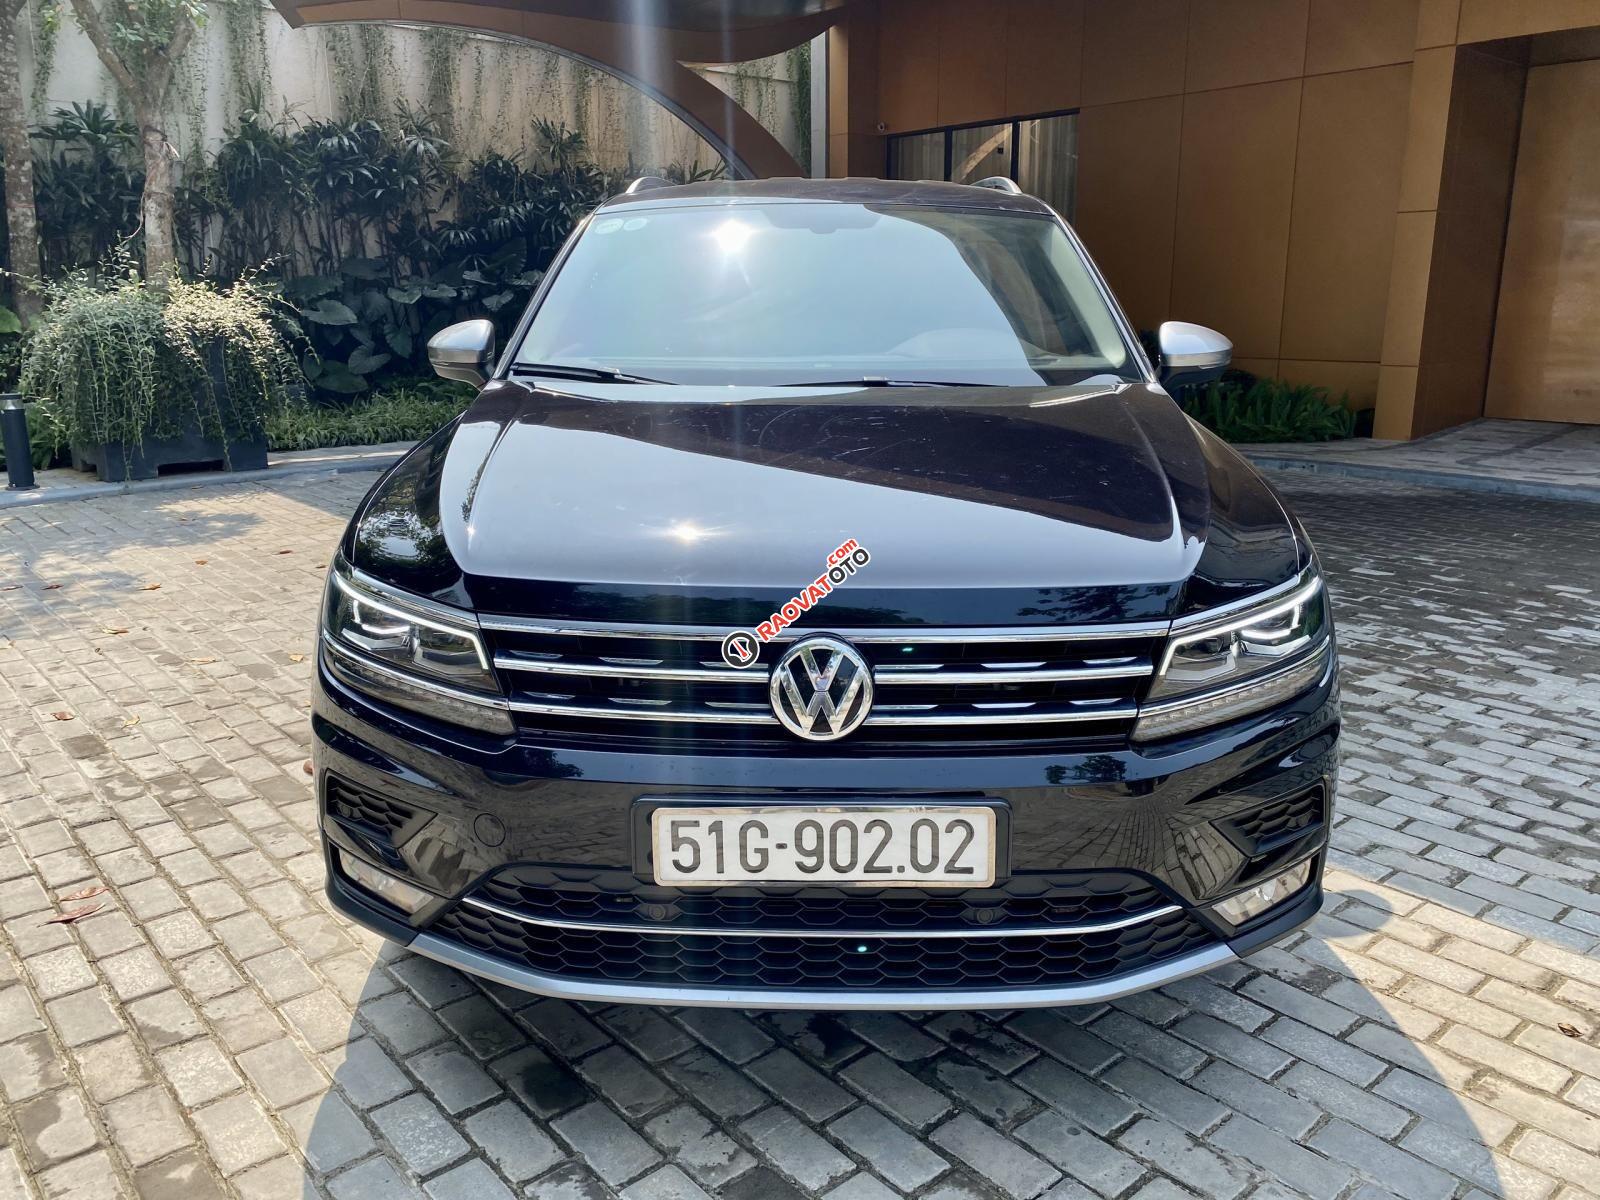 Bán Volkswagen Tiguan đời 2018, màu đen, xe mới đi-0